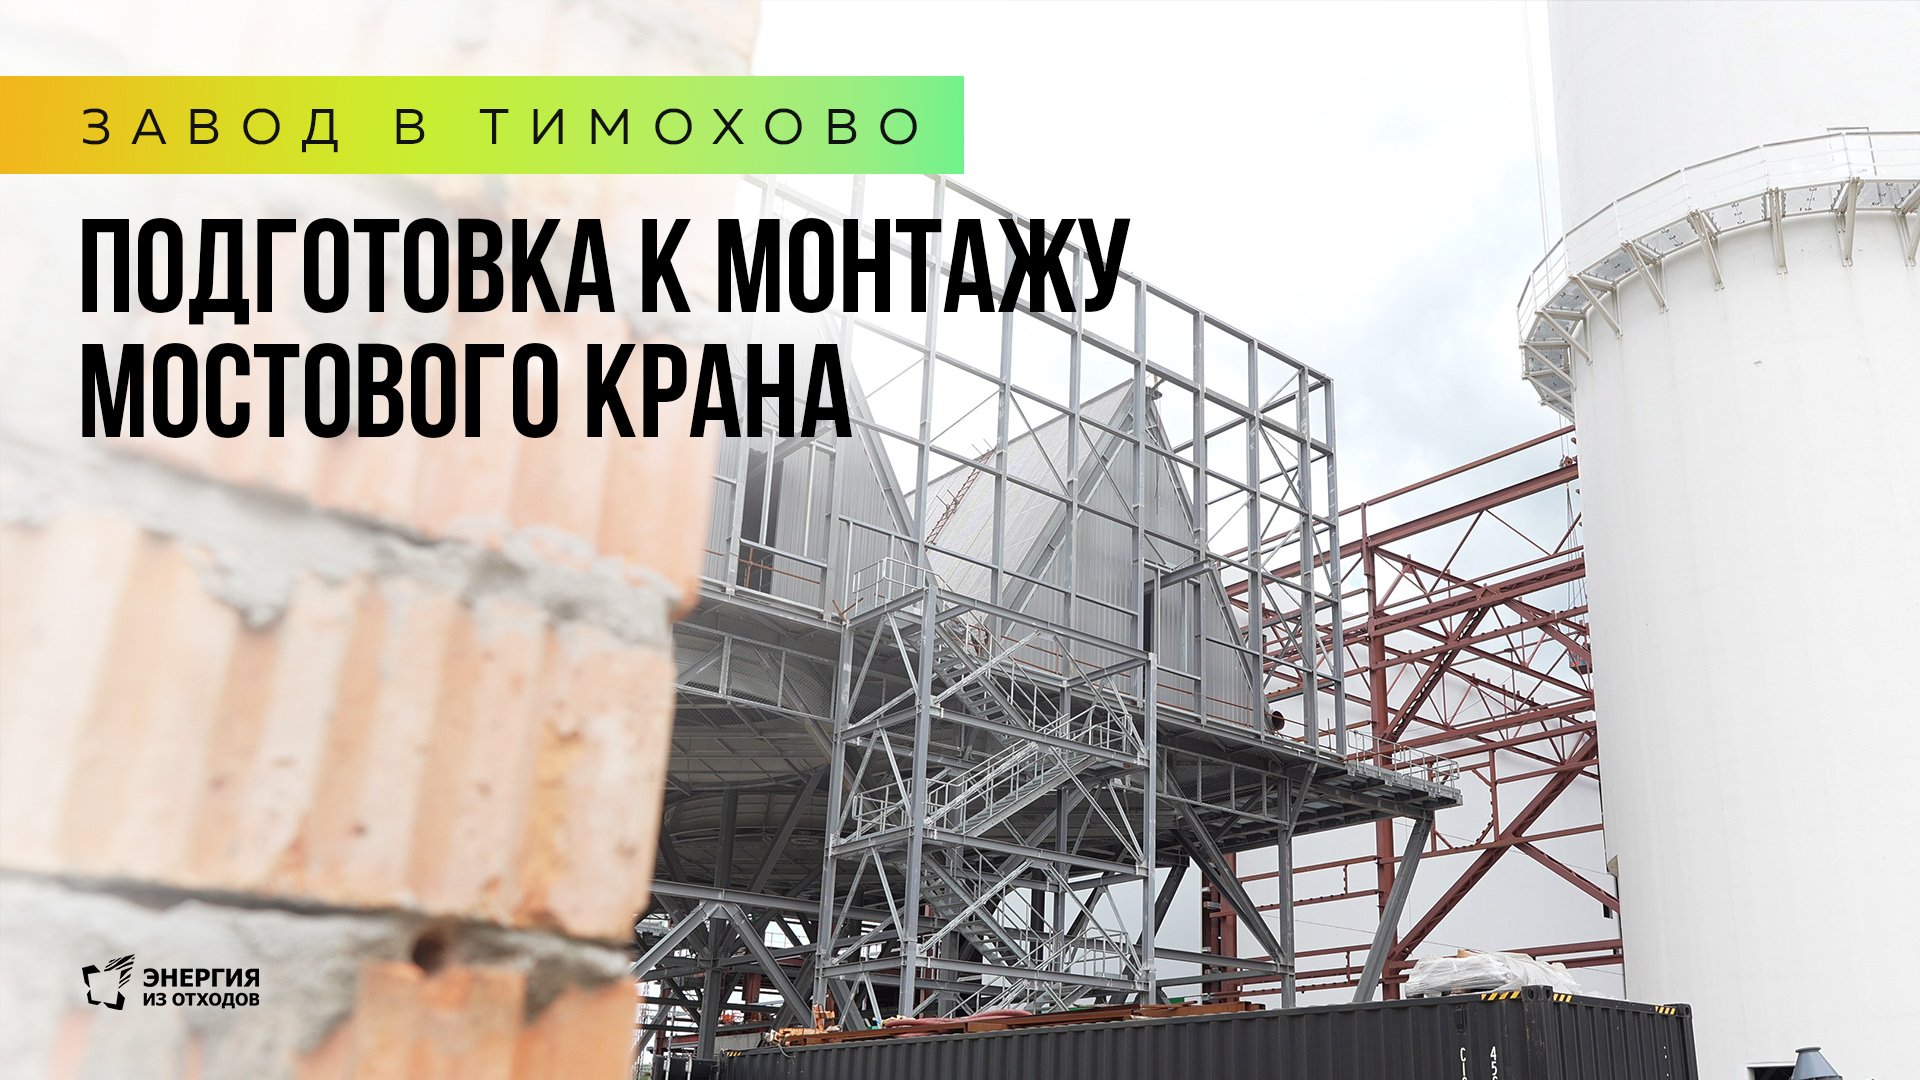 Завод в Тимохово: подготовка к монтажу мостового крана